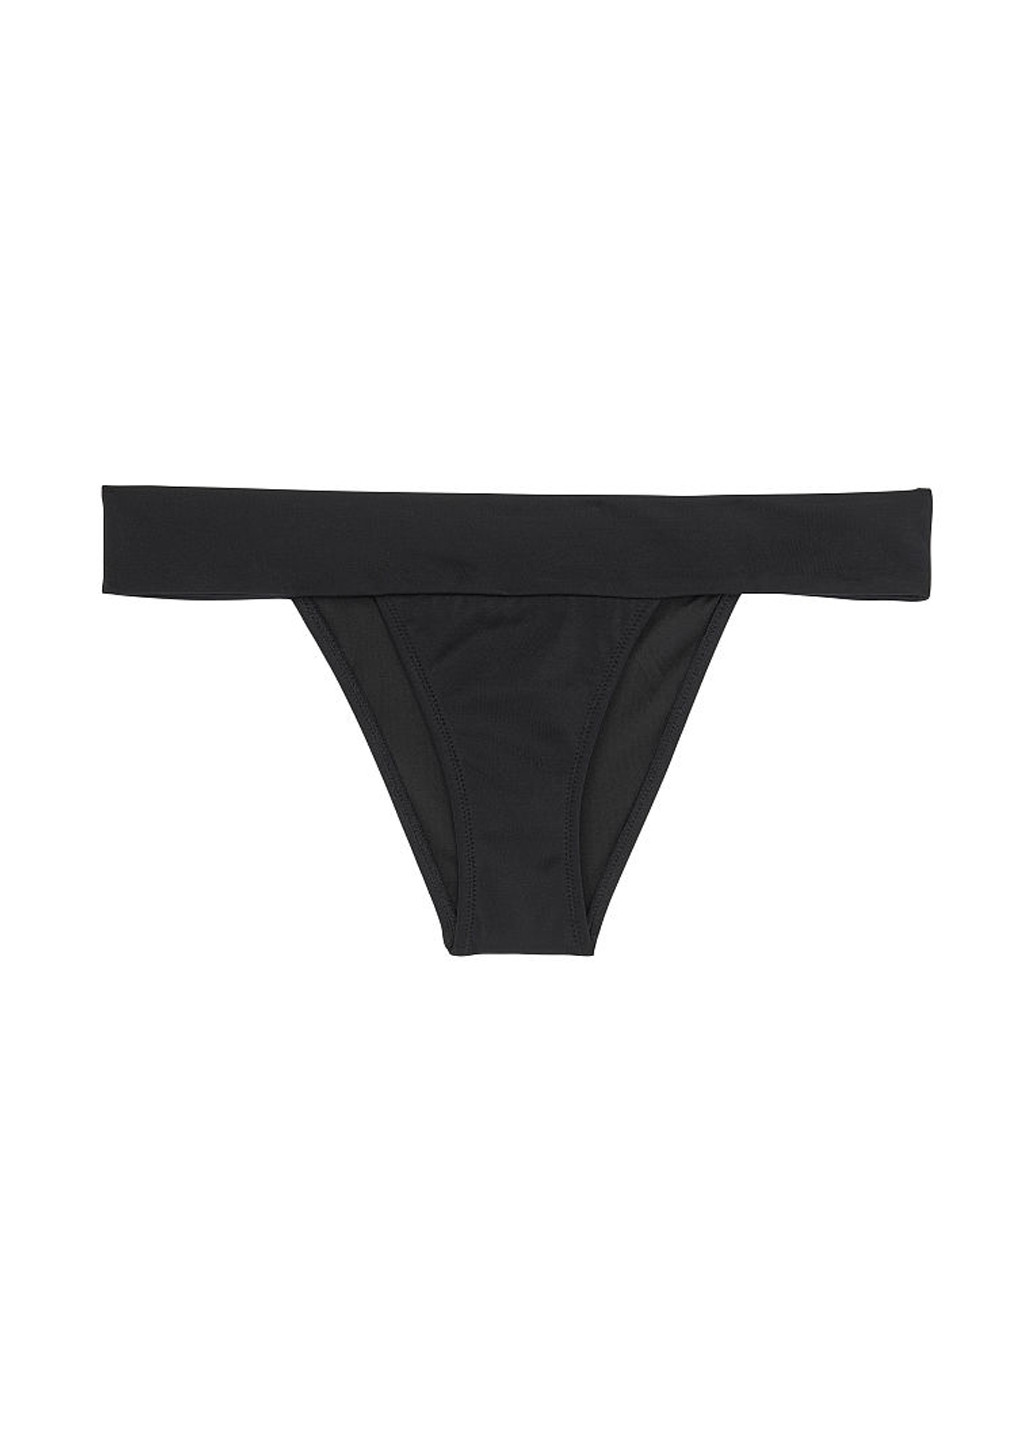 Чорний літній купальник (ліф, труси) роздільний, бікіні Victoria's Secret